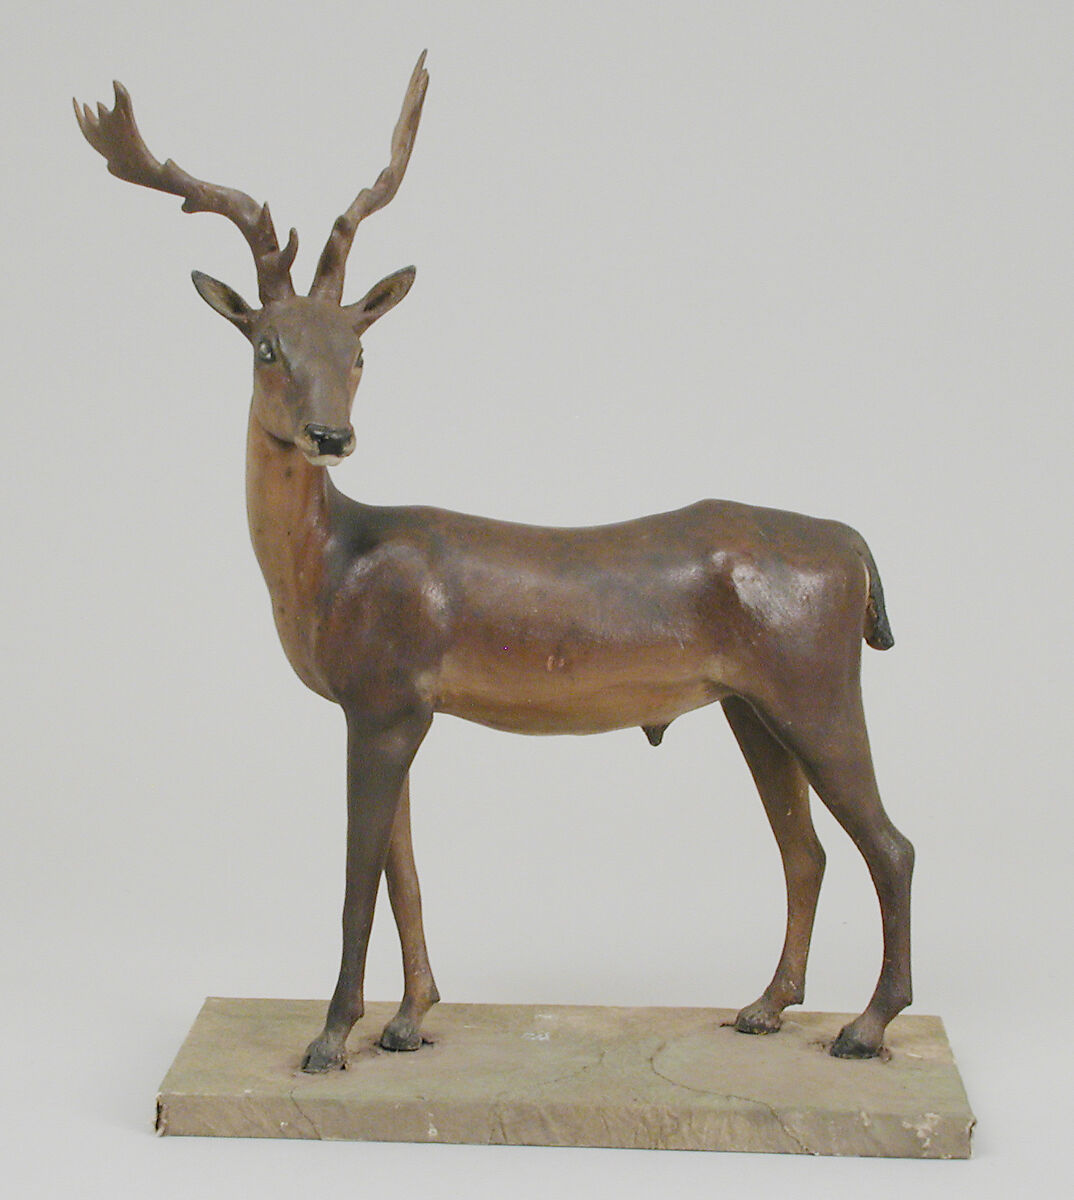 Antlered buck, Polychromed terracotta body; wooden legs and horns; glass eyes